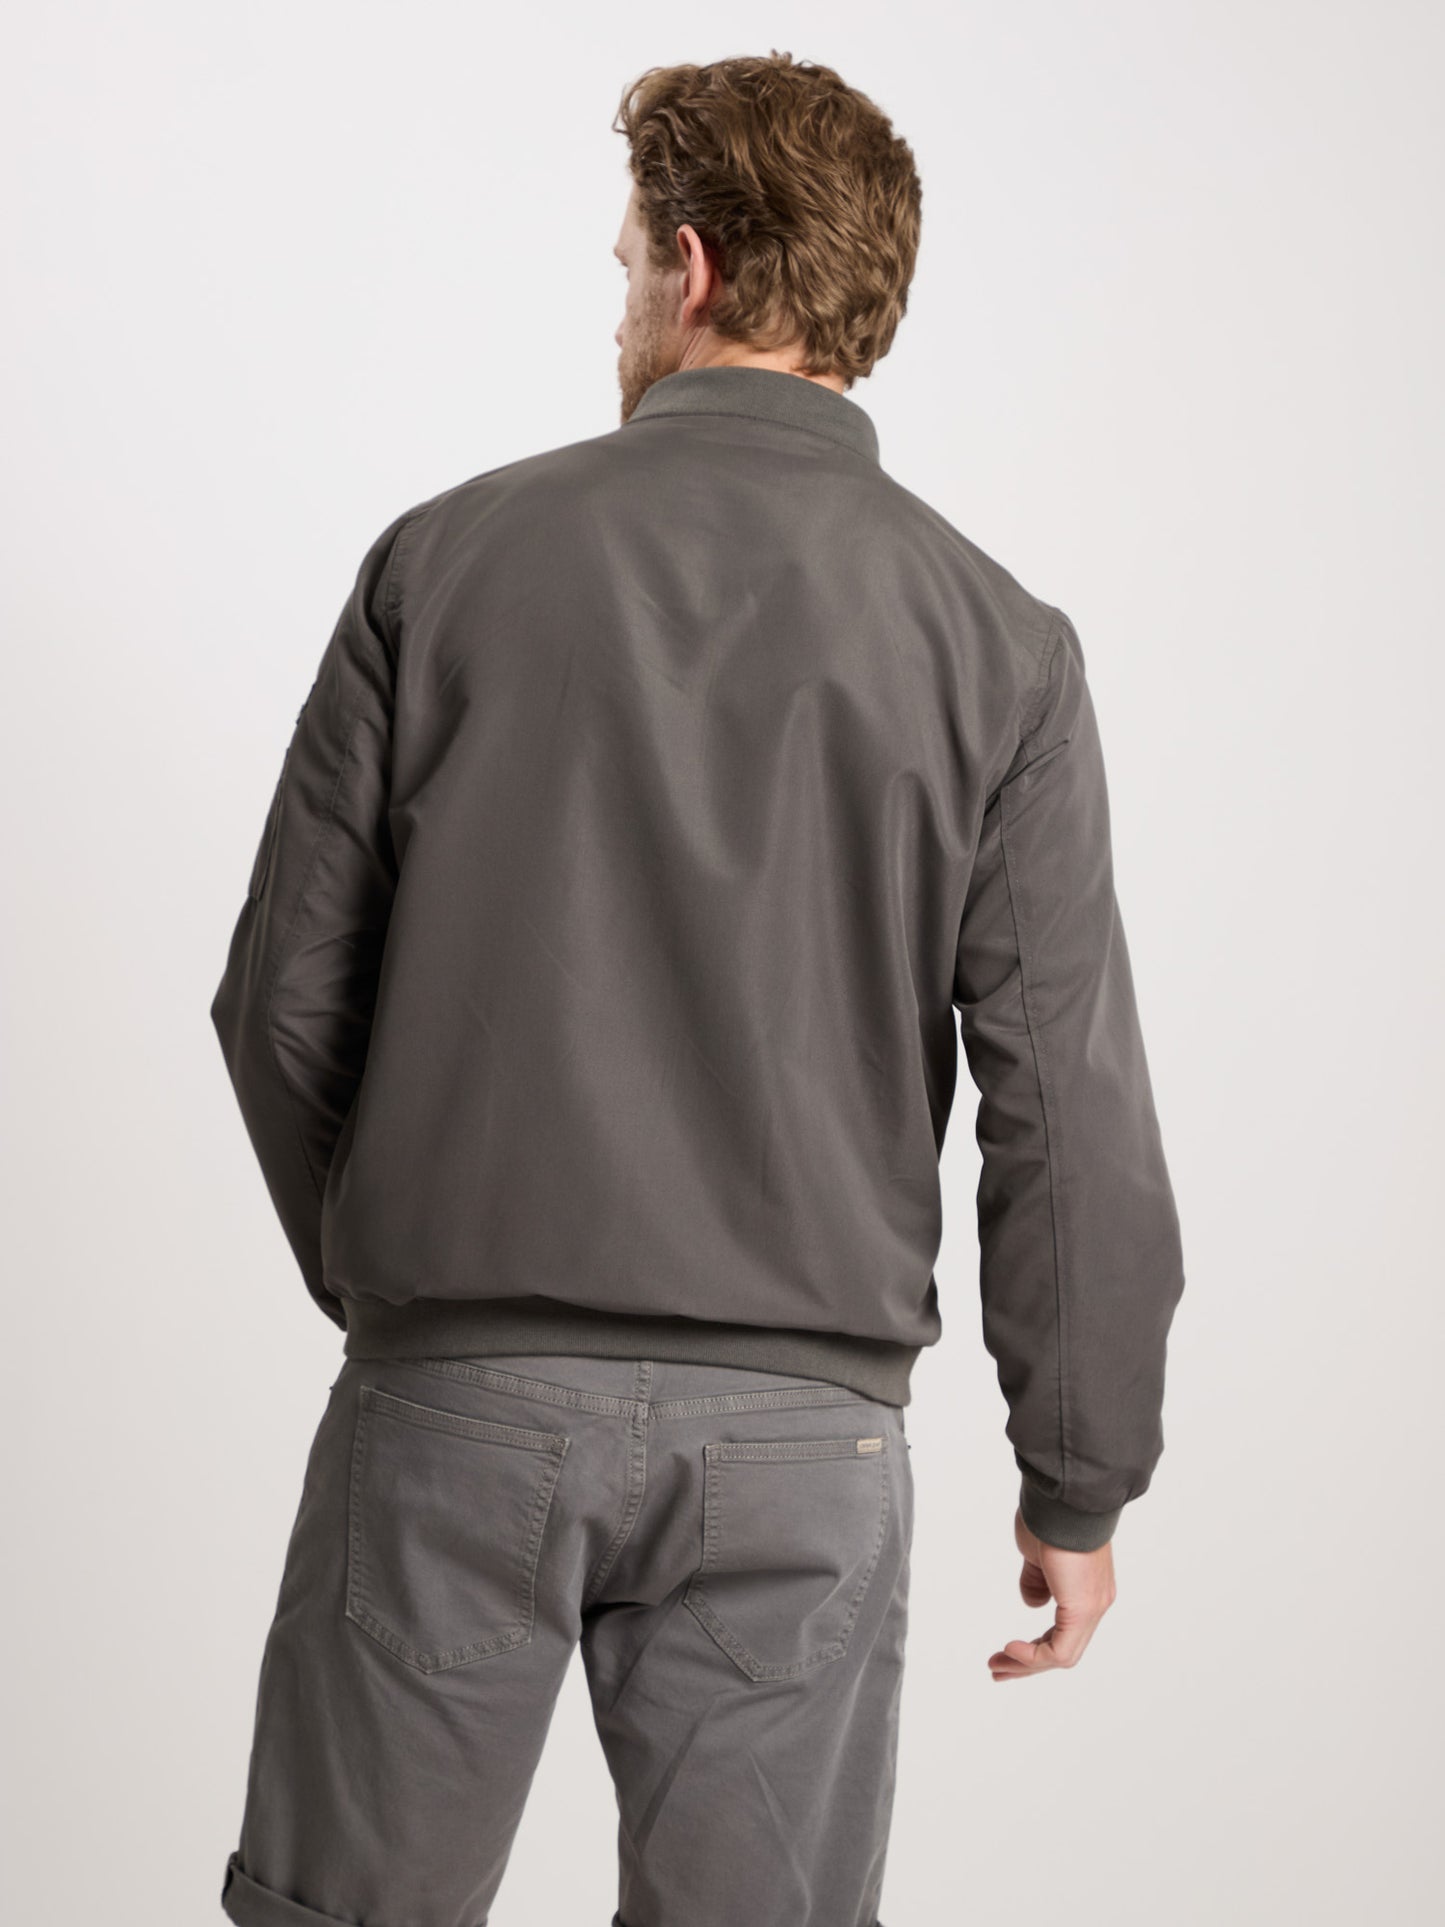 Herren Regular Bomber-Jacke mit Reißverschluss und Reißverschluss-Taschen dunkelgrau.